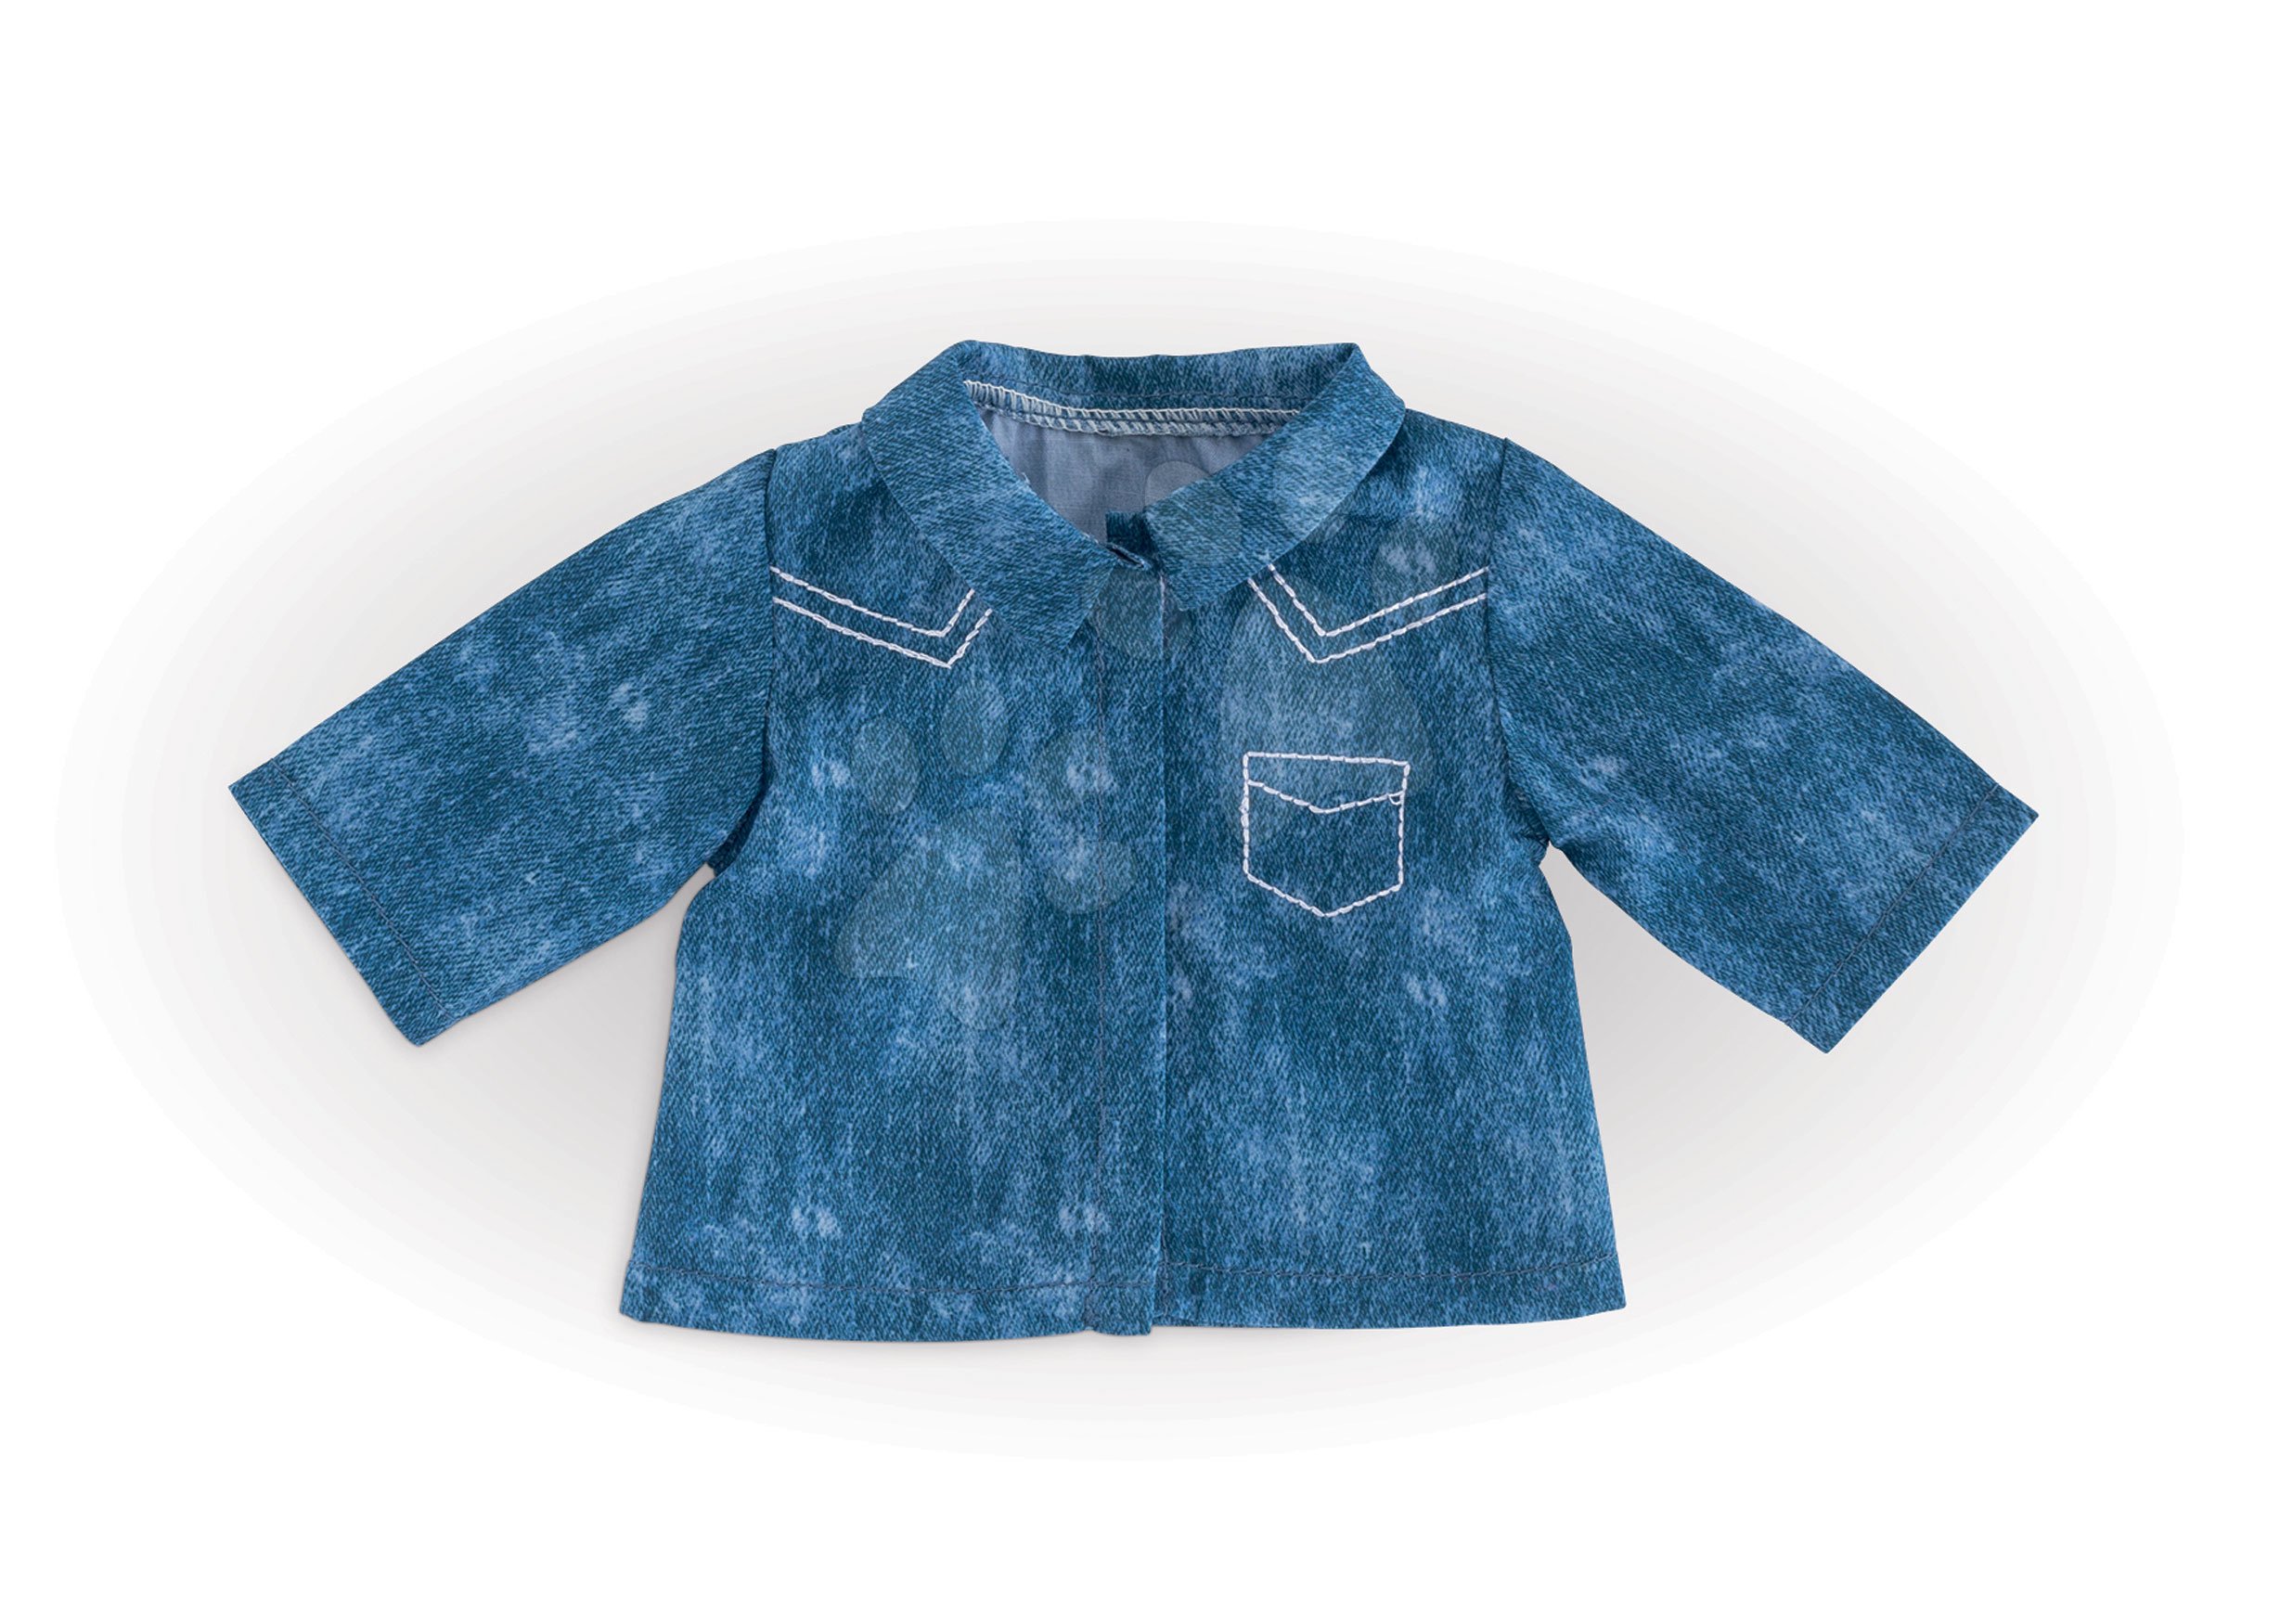 Oblečenie Shirt Blue Ma Corolle pre 36 cm bábiku od 4 rokov